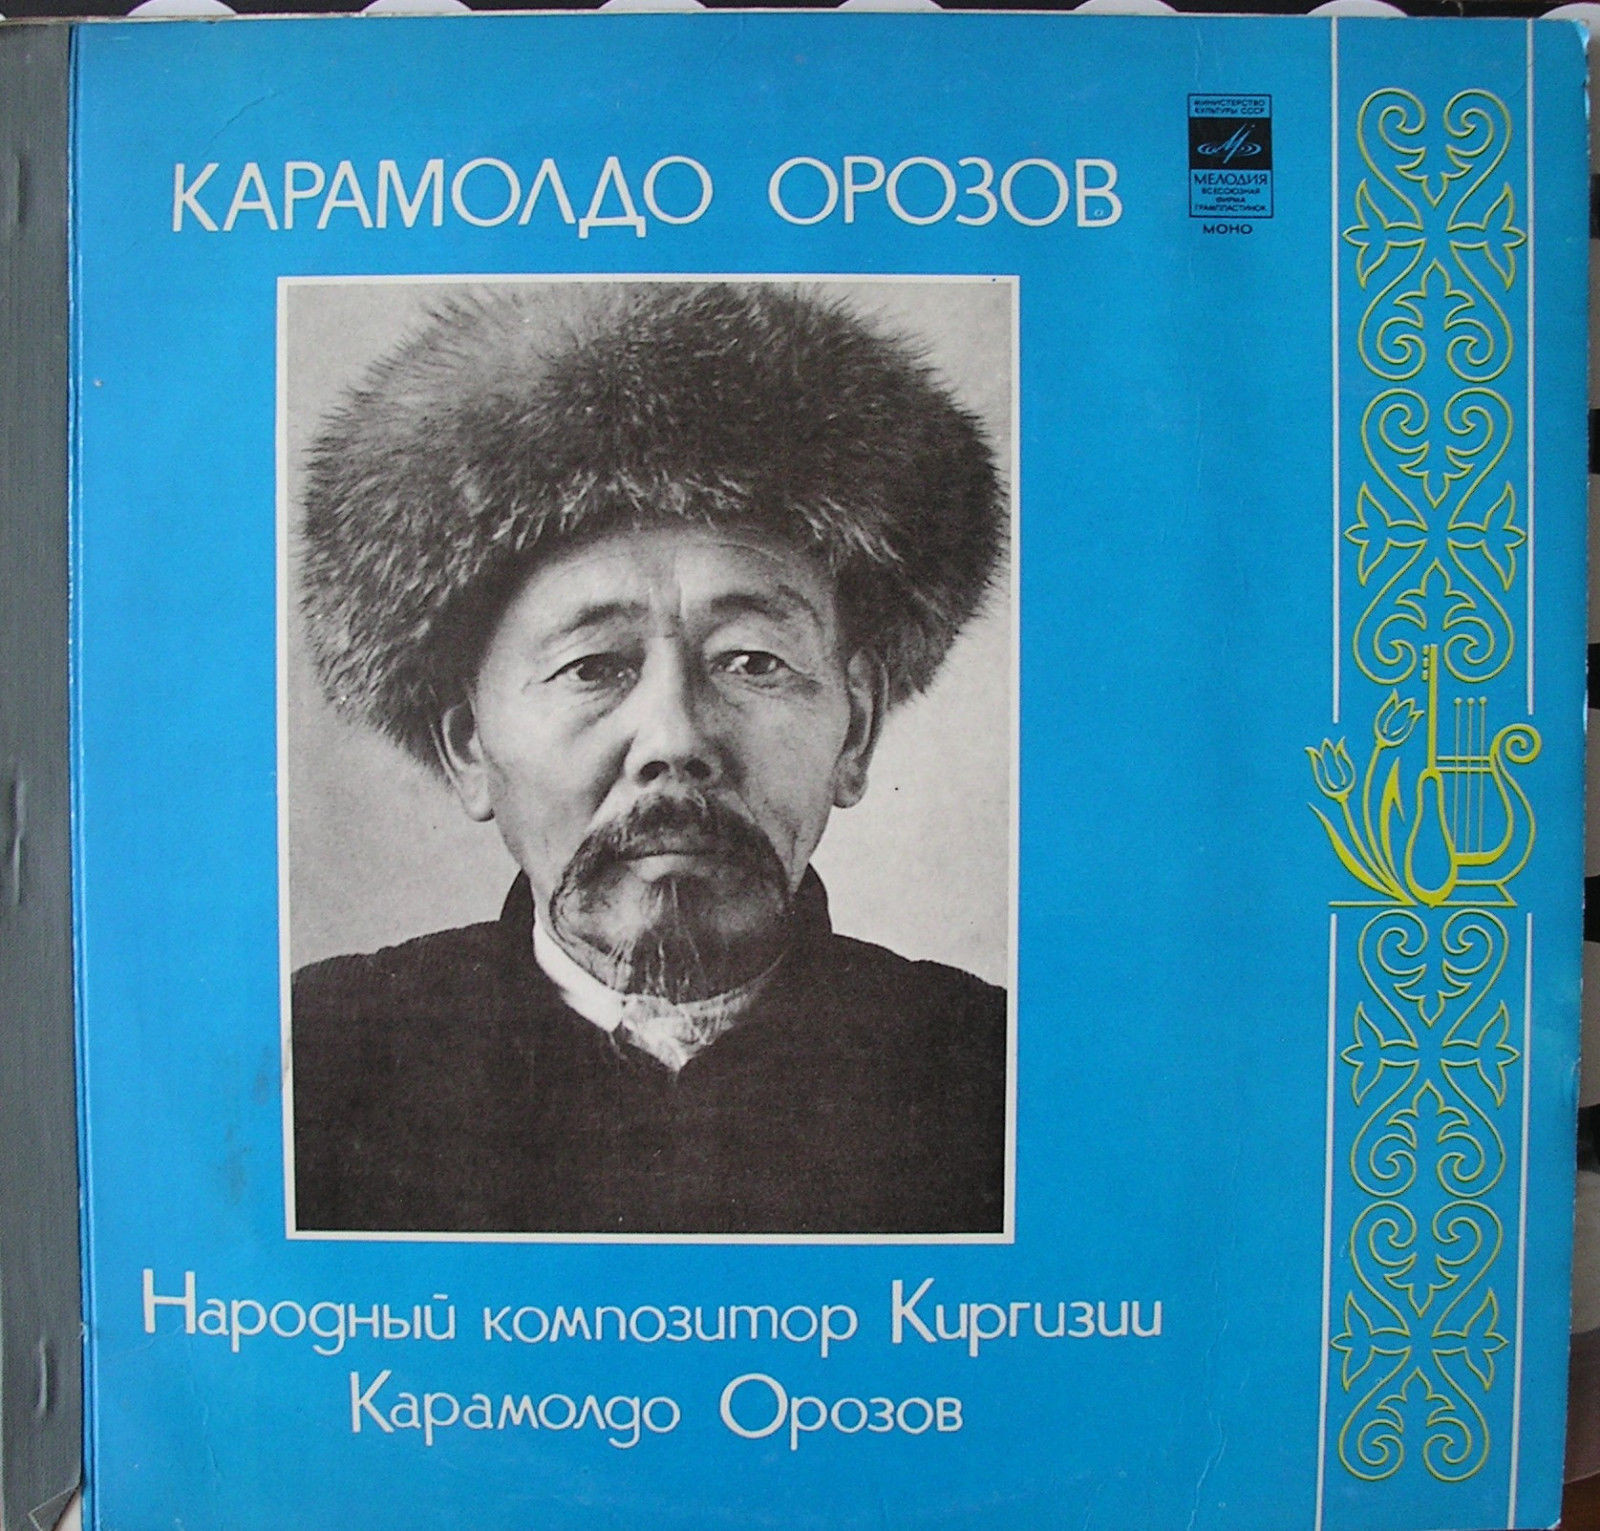 НАРОДНЫЙ КОМПОЗИТОР КИРГИЗИИ Карамолдо ОРОЗОВ (1882—1960). Творческий портрет